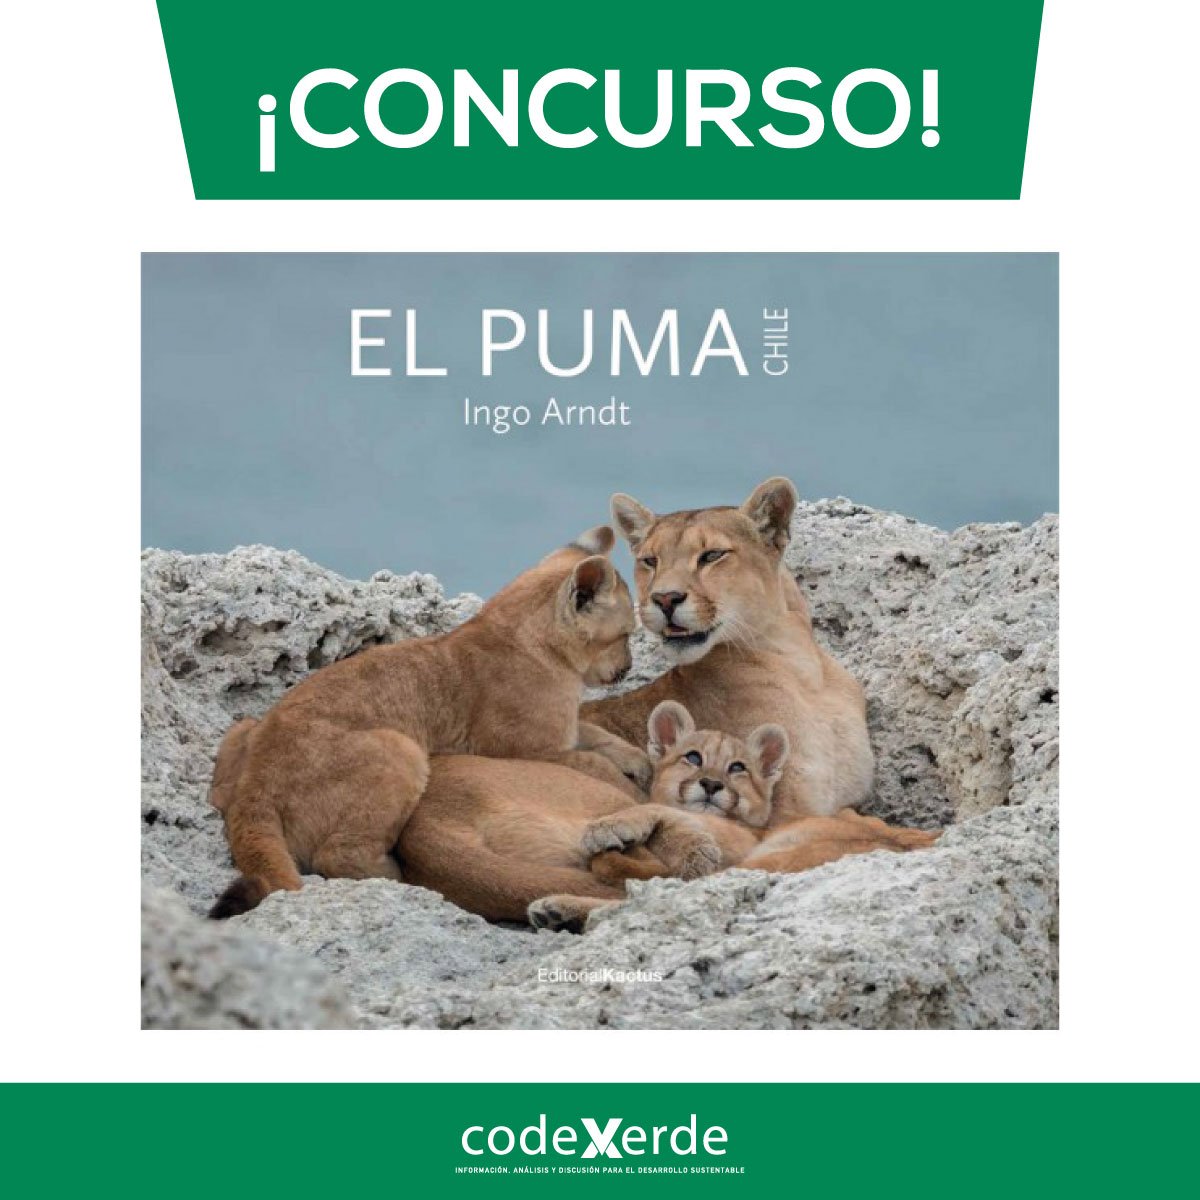 Codexverde on Twitter: "¡Concurso, concurso! por uno de los tres ejemplares del libro "El Puma", de Editorial Kactus😉 ¿Cómo? 👀 1. Dale RT y "me gusta" a la publicación✔️ 2.